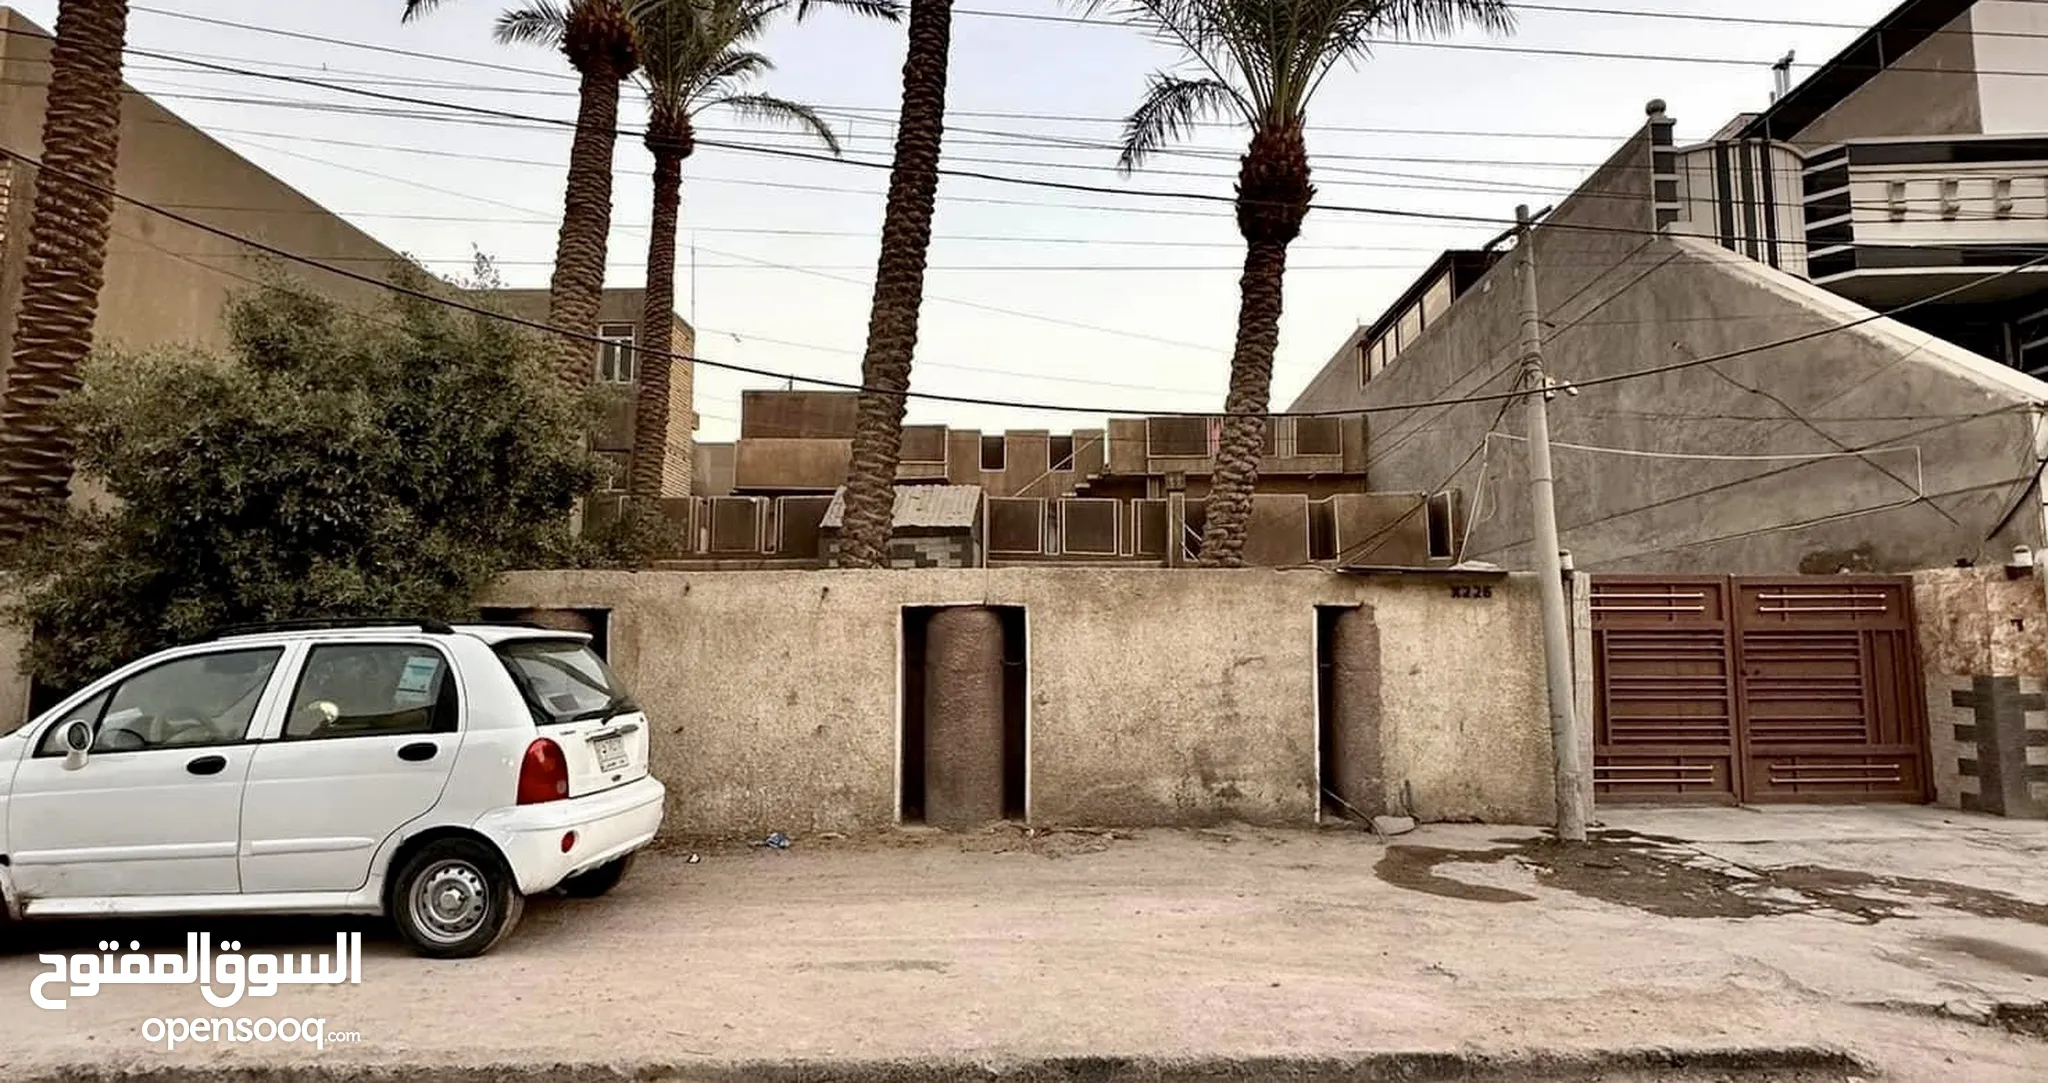 عقارات للبيع : بيوت - منازل للبيع : (صفحة 3) : بغداد | السوق المفتوح